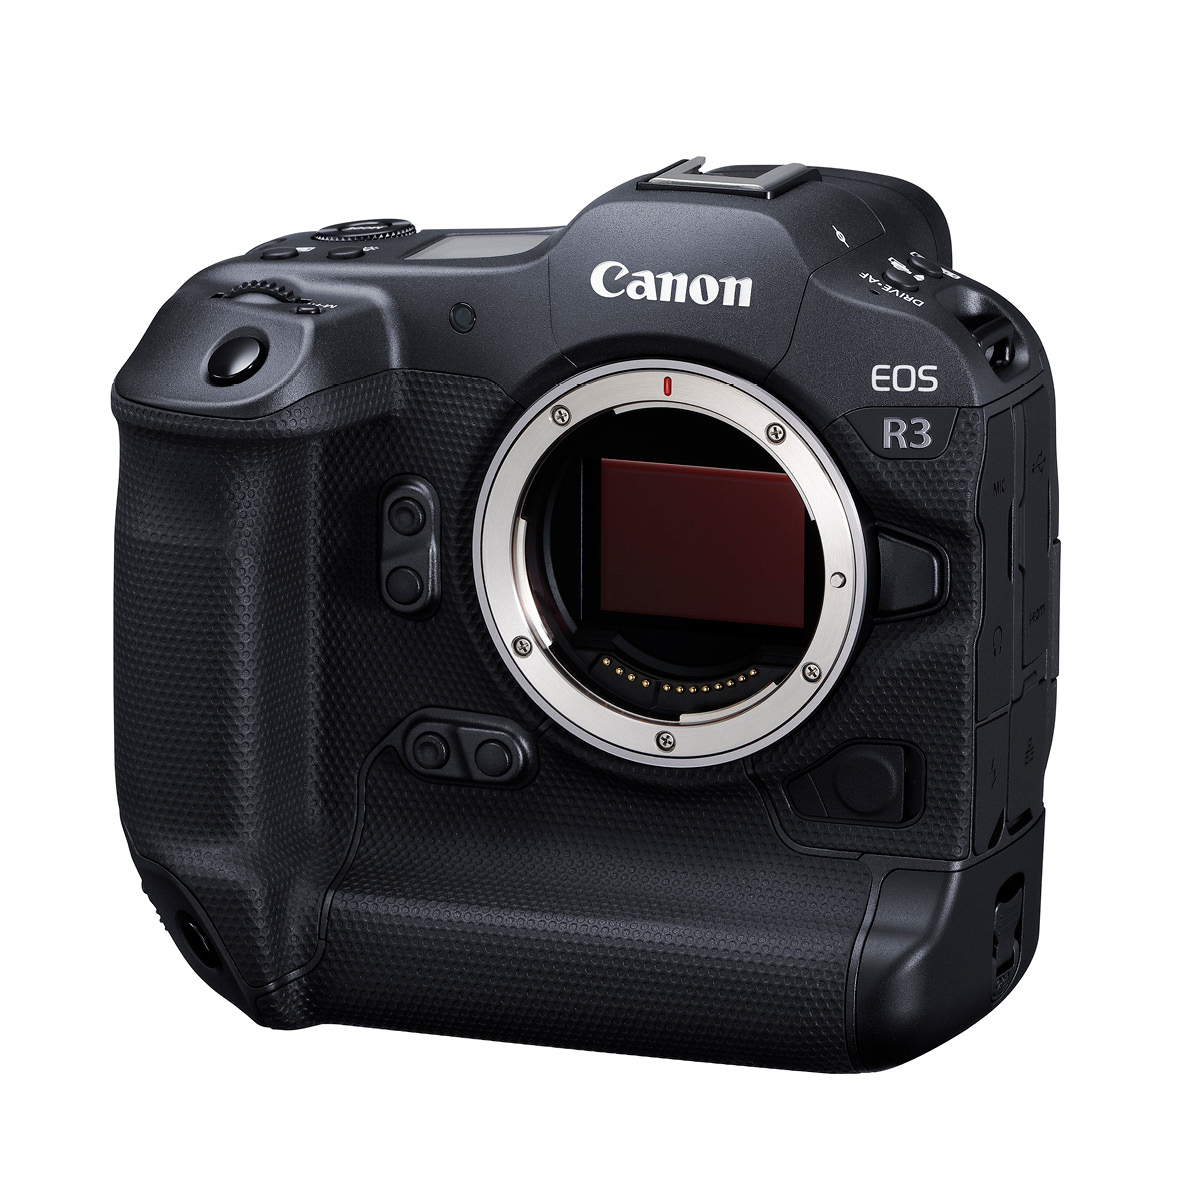 Canon EOS R3 Gehäuse